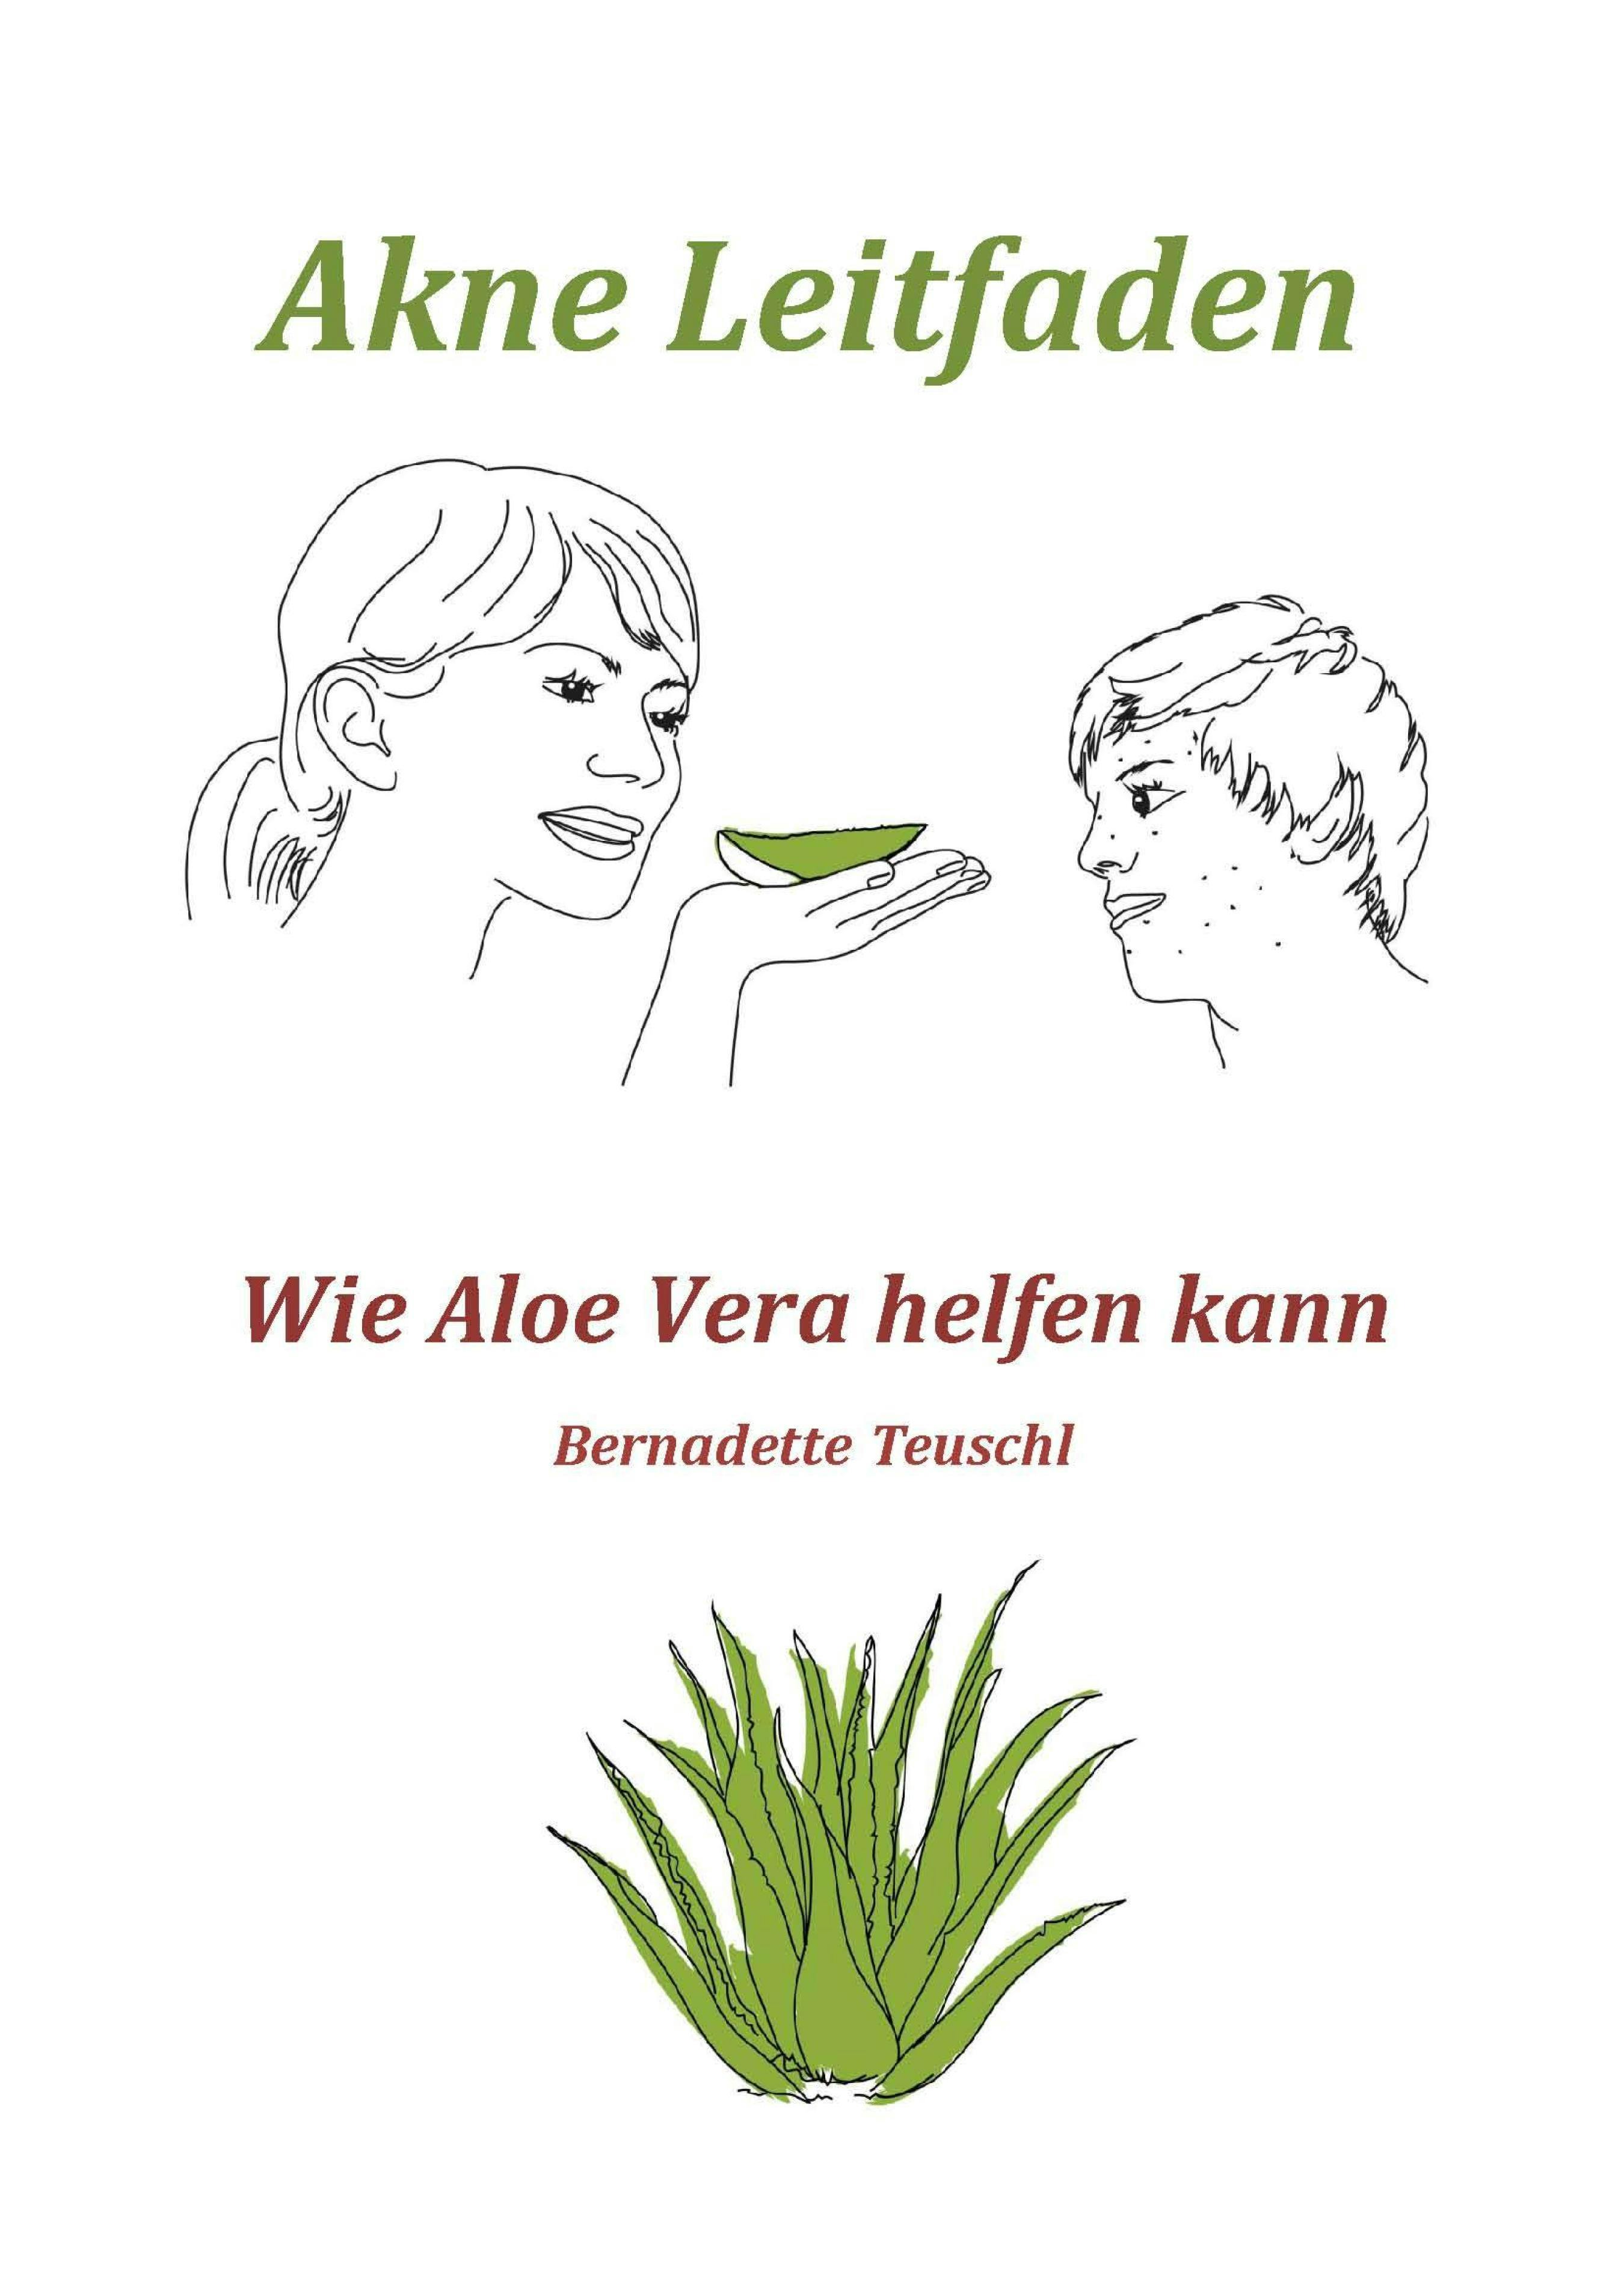 Akne Leitfaden - Wie Ihnen Aloe Vera helfen kann - Bernadette Teuschl